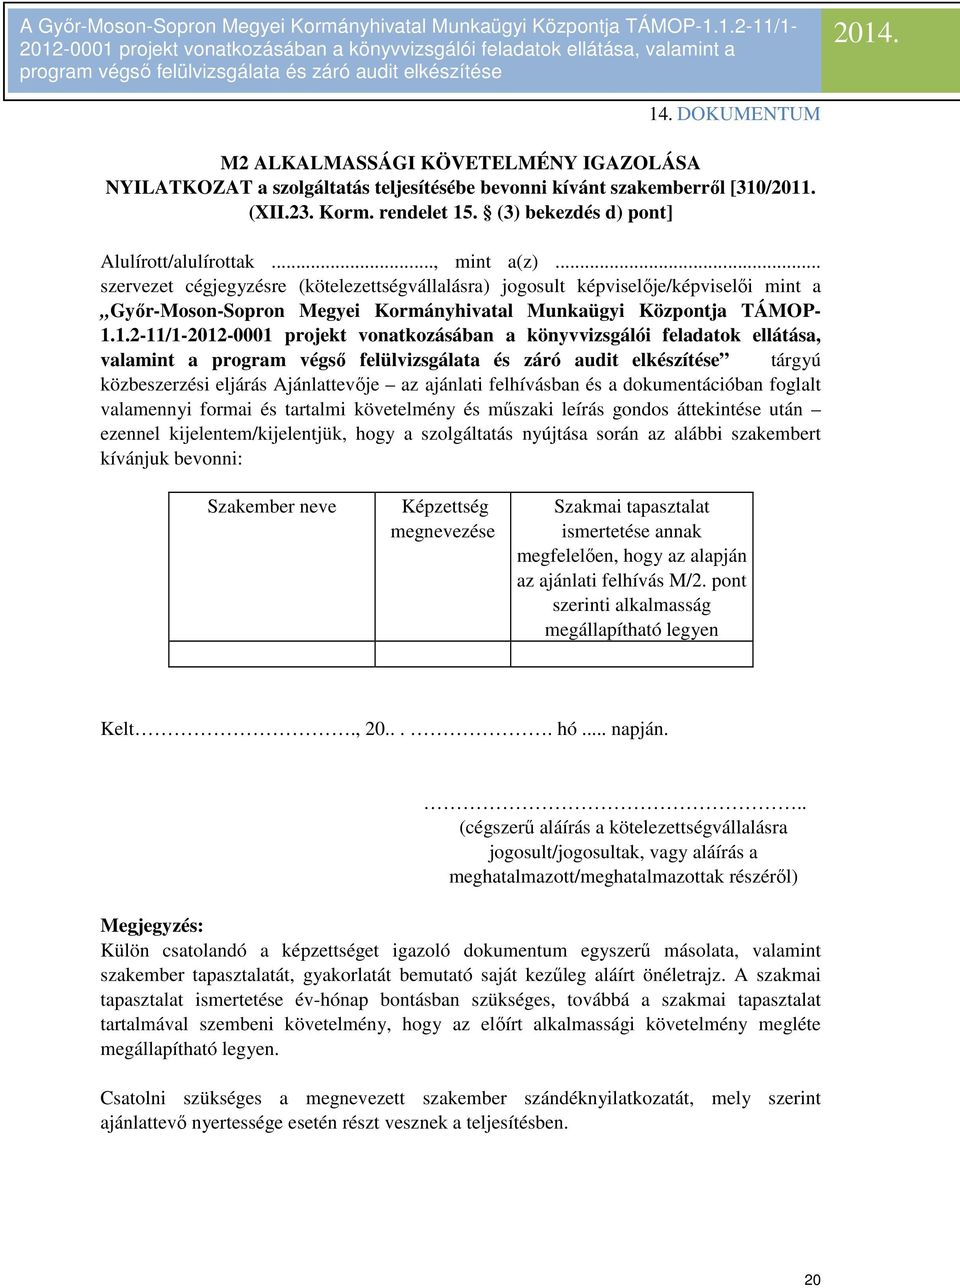 .. szervezet cégjegyzésre (kötelezettségvállalásra) jogosult képviselője/képviselői mint a Győr-Moson-Sopron Megyei Kormányhivatal Munkaügyi Központja TÁMOP- 1.